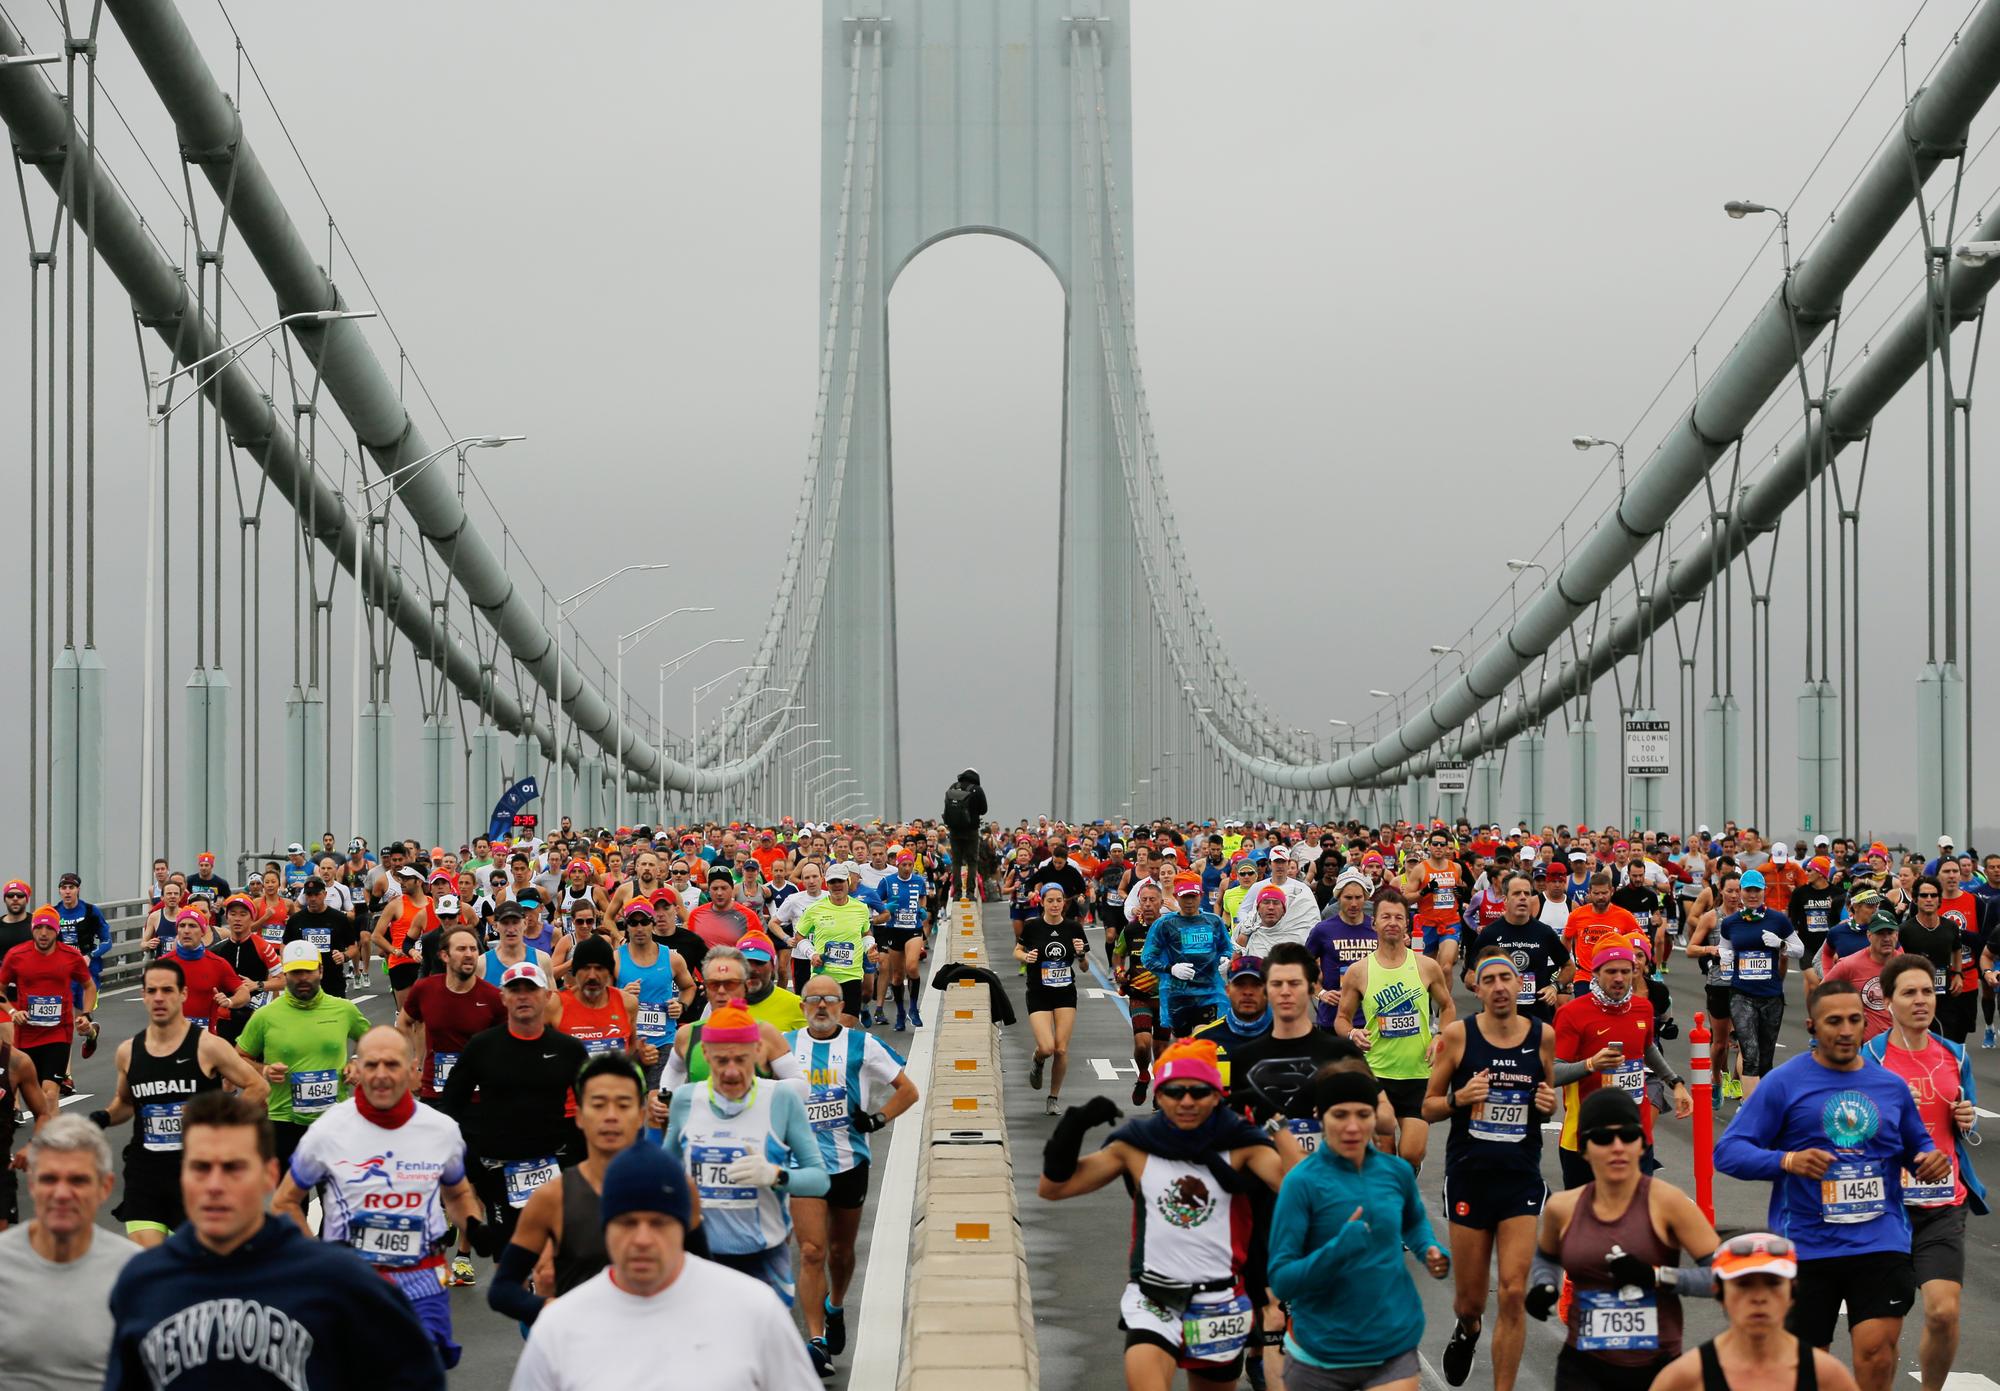 Les marathoniens se sont élancés sur le pont Verrazano-Narrows. [REUTERS - Lucas Jackson]